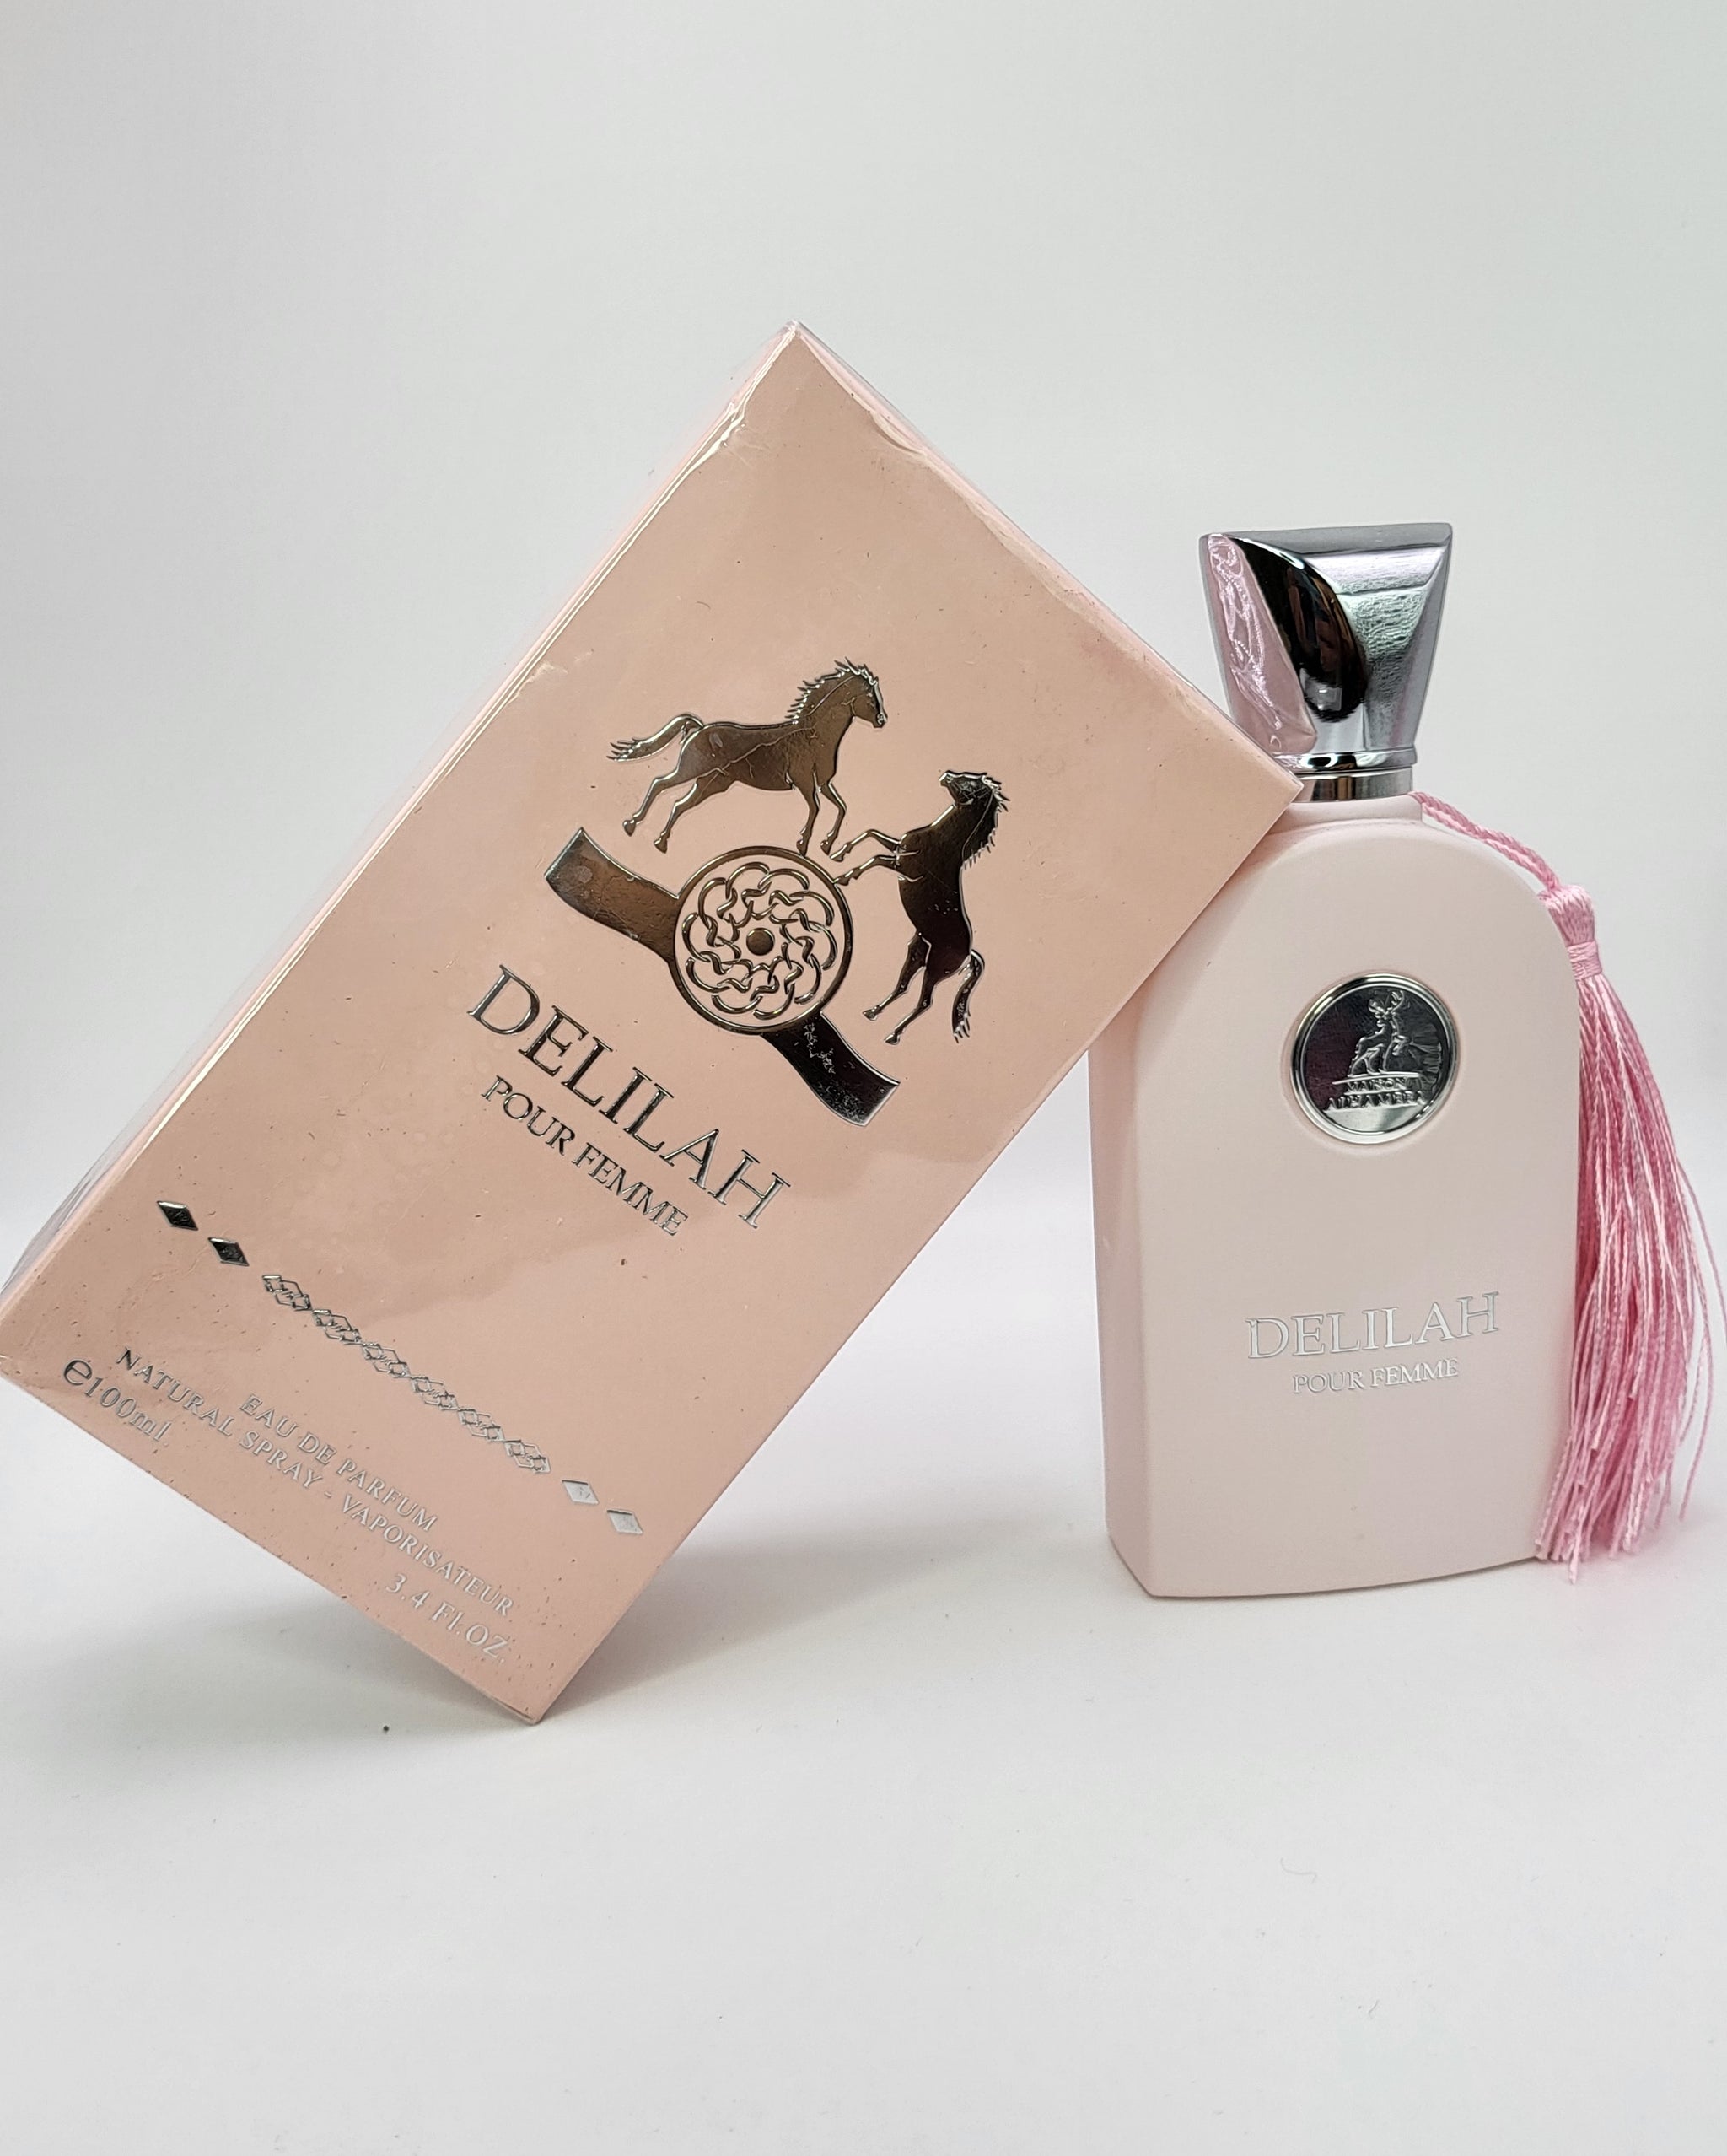 Delilah Pour Femme Eau De Parfum By Maison Alhambra For Women 3.4 oz.